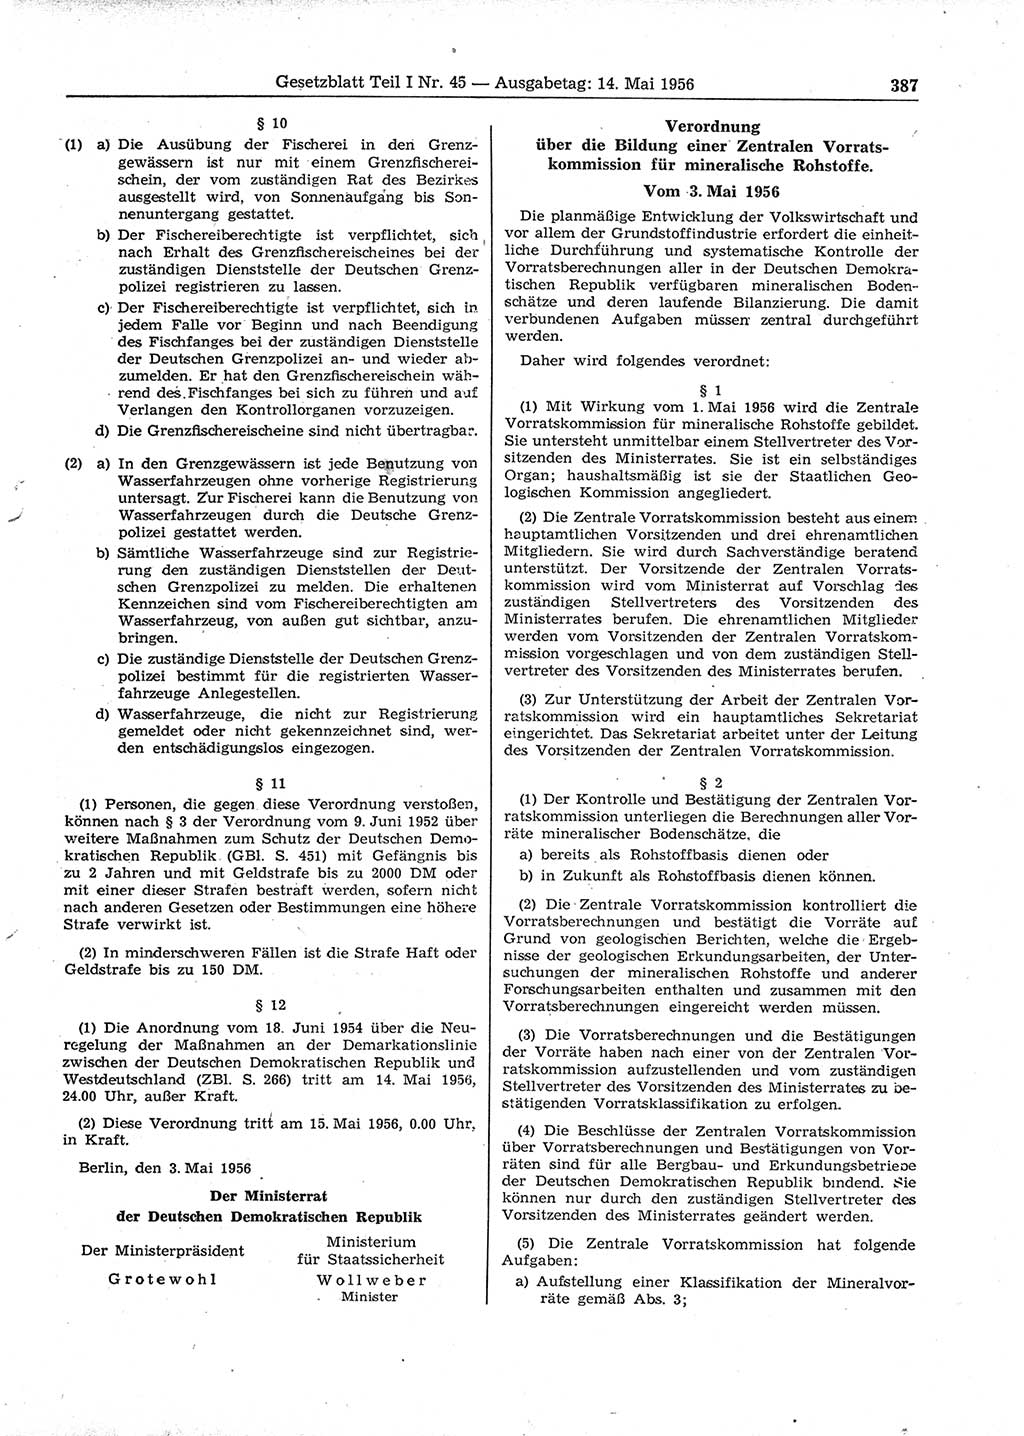 Gesetzblatt (GBl.) der Deutschen Demokratischen Republik (DDR) Teil Ⅰ 1956, Seite 387 (GBl. DDR Ⅰ 1956, S. 387)